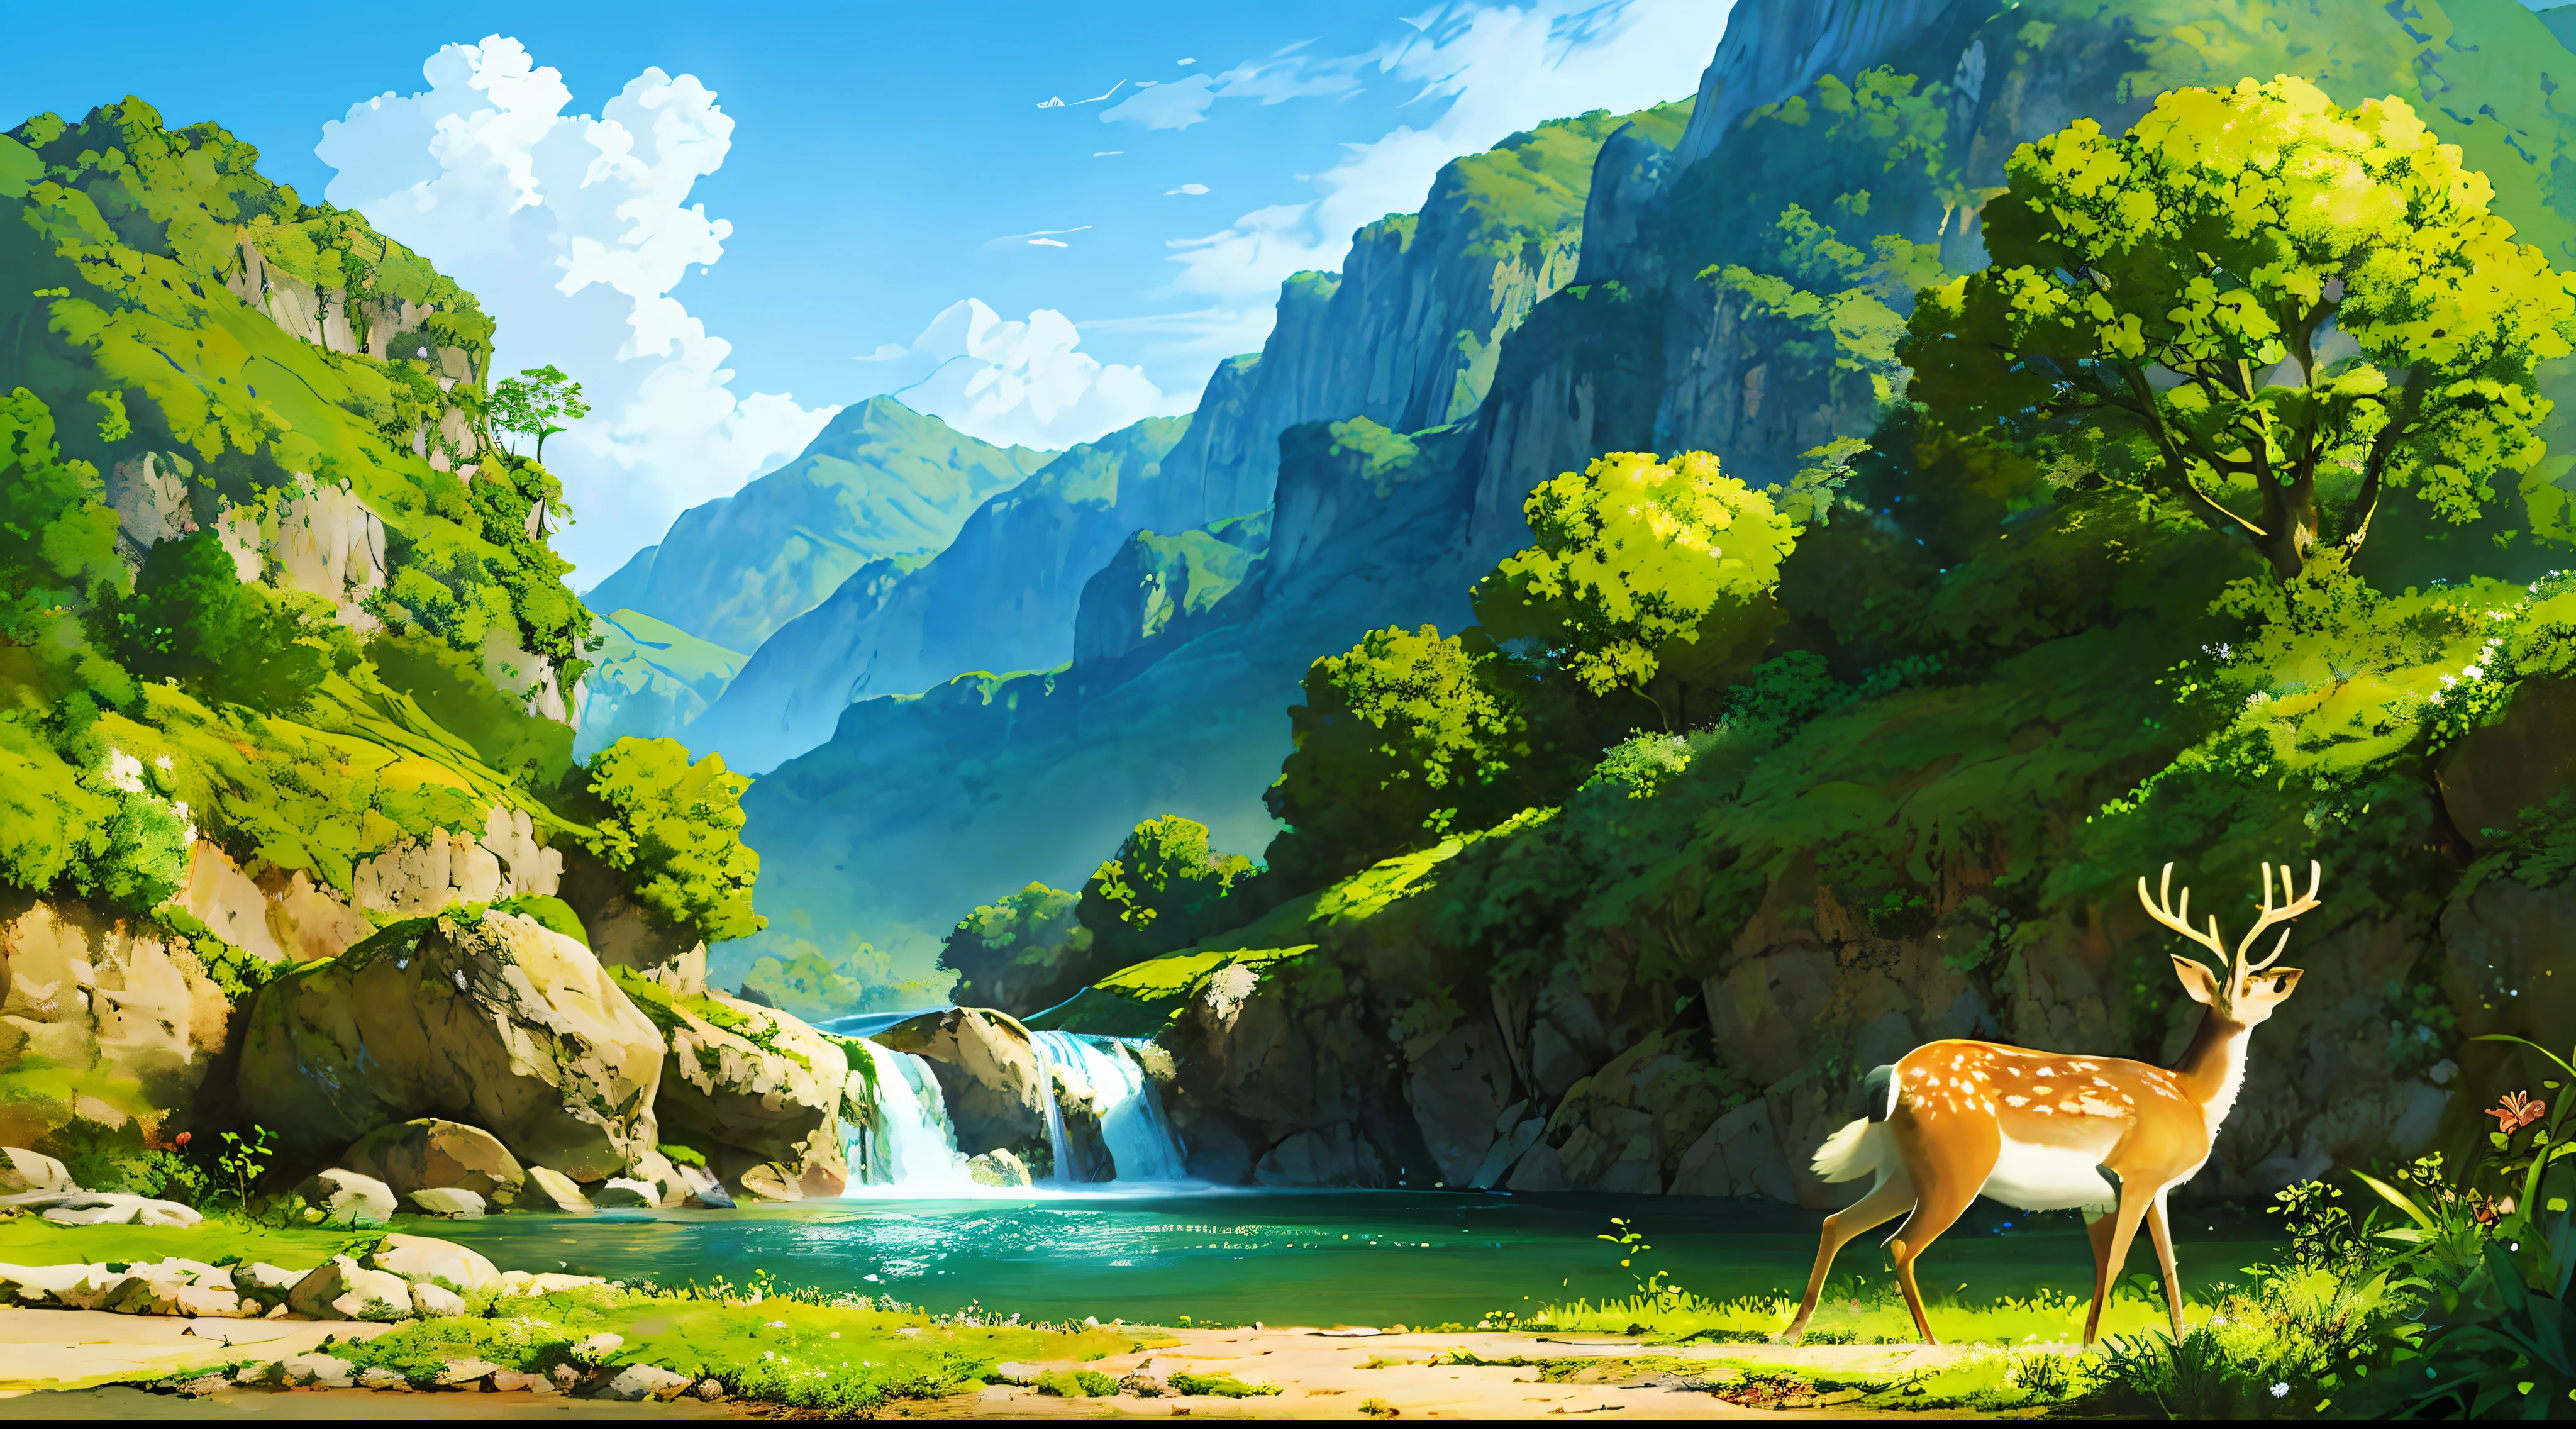 사슴이 있는 풍경, 흐린 하늘, 숲 속에서, 폭포와 강